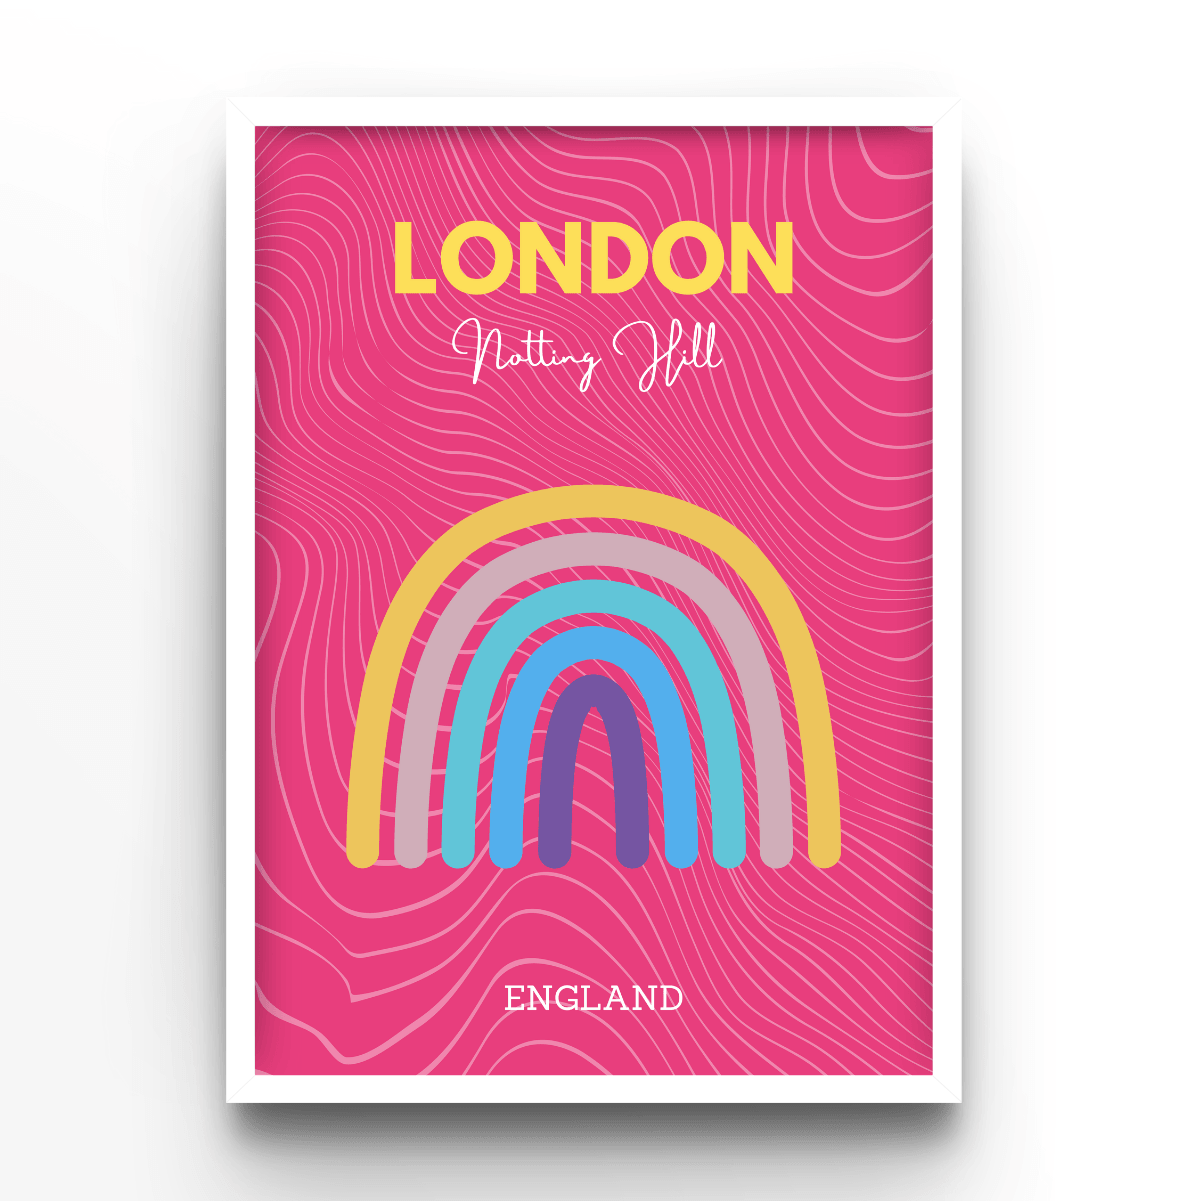 London - A4, A3, A2 Posters Base - Poster Print Shop / Art Prints / PostersBase